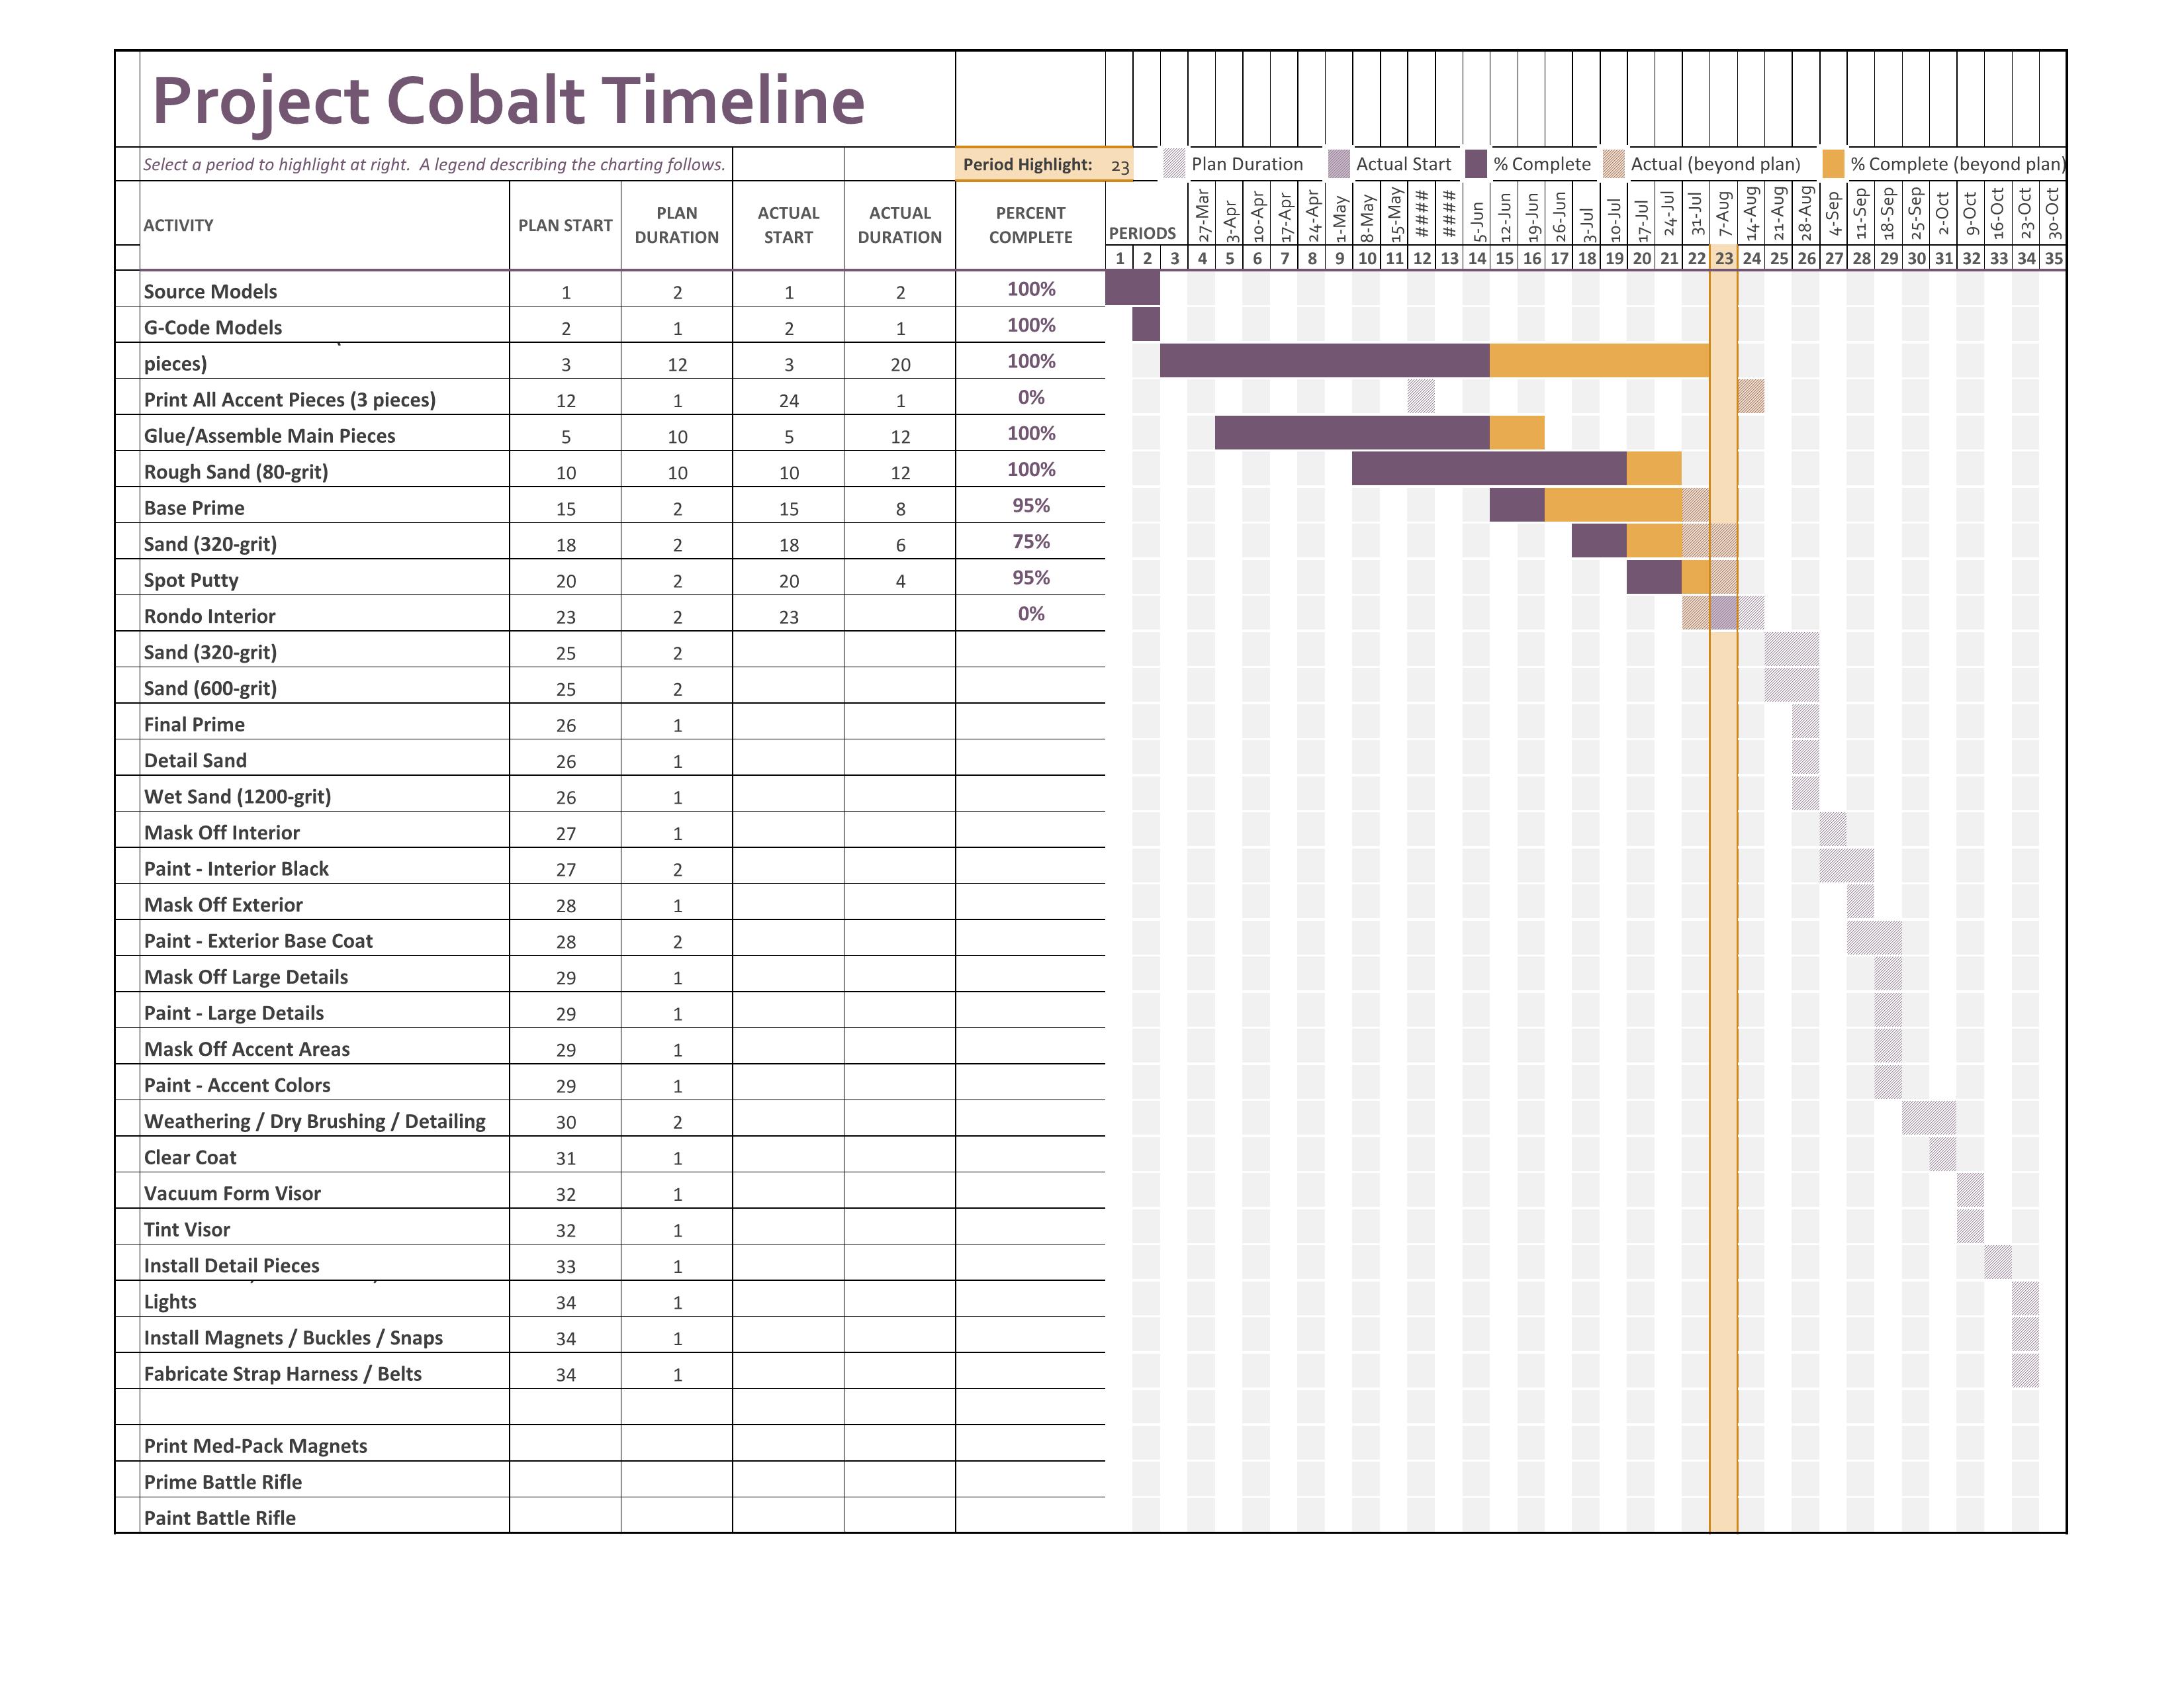 Project Cobalt Timeline.jpg